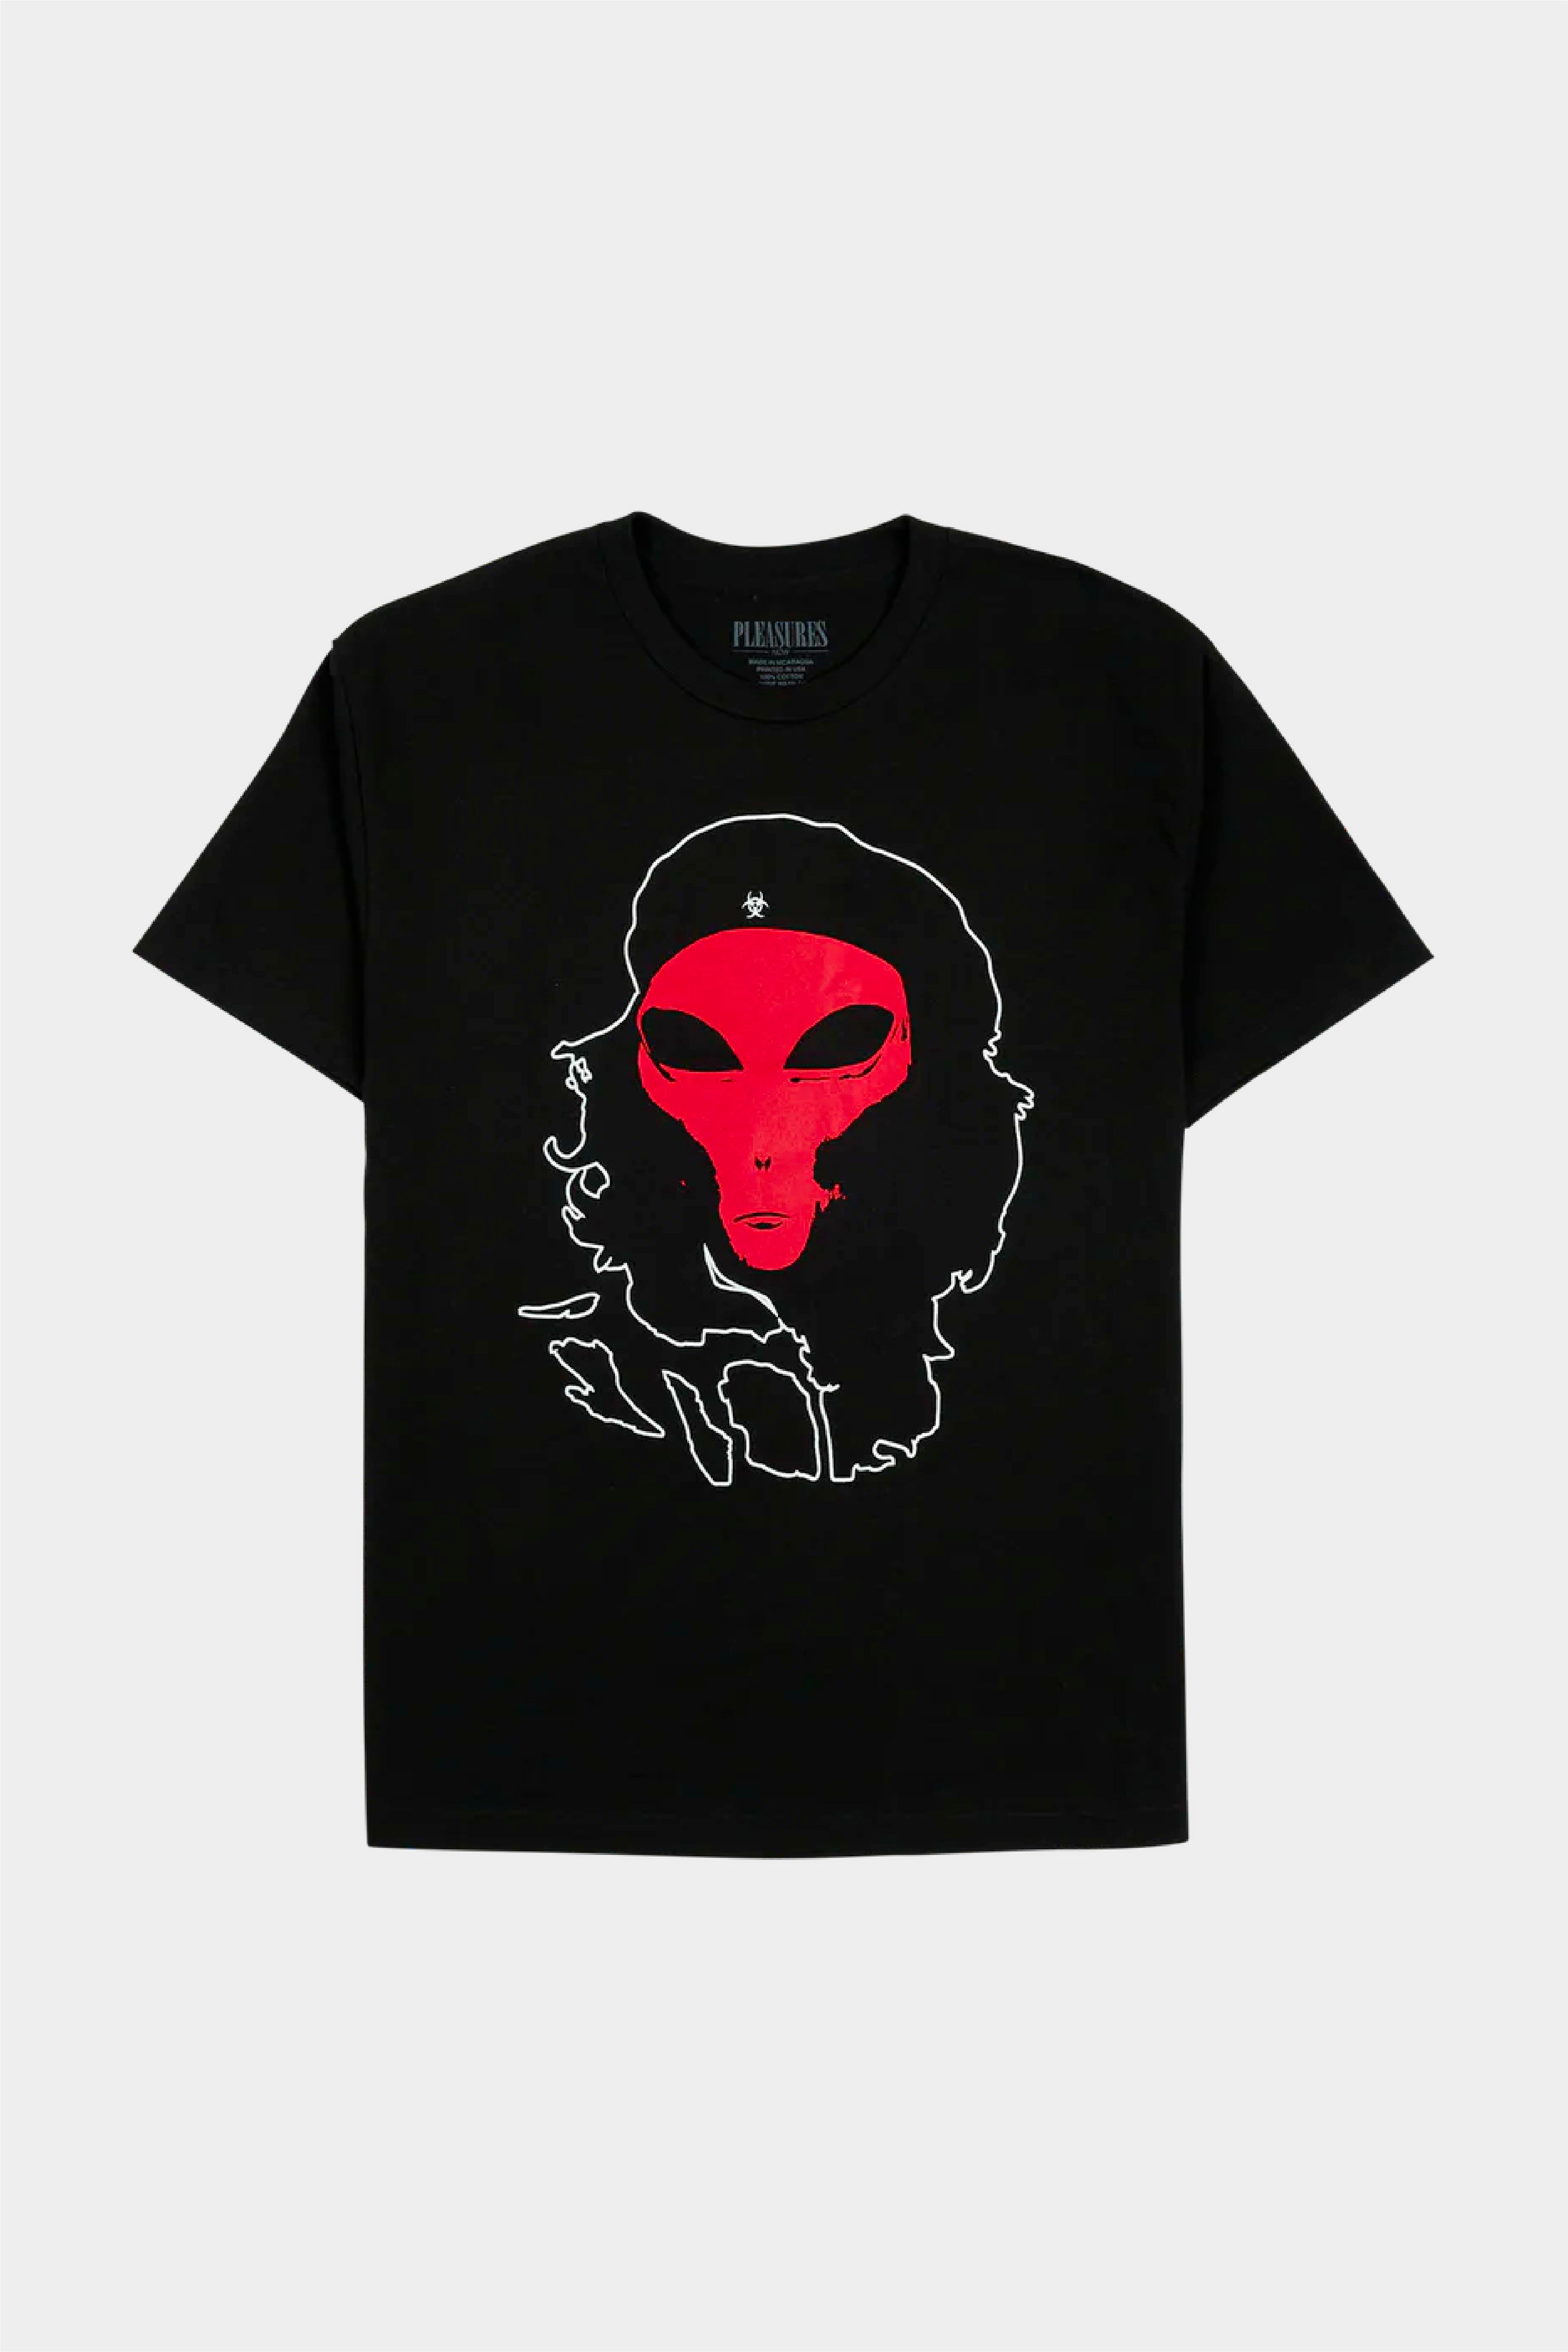 Selectshop FRAME - PLEASURES Alien Tee T-Shirts Concept Store Dubai